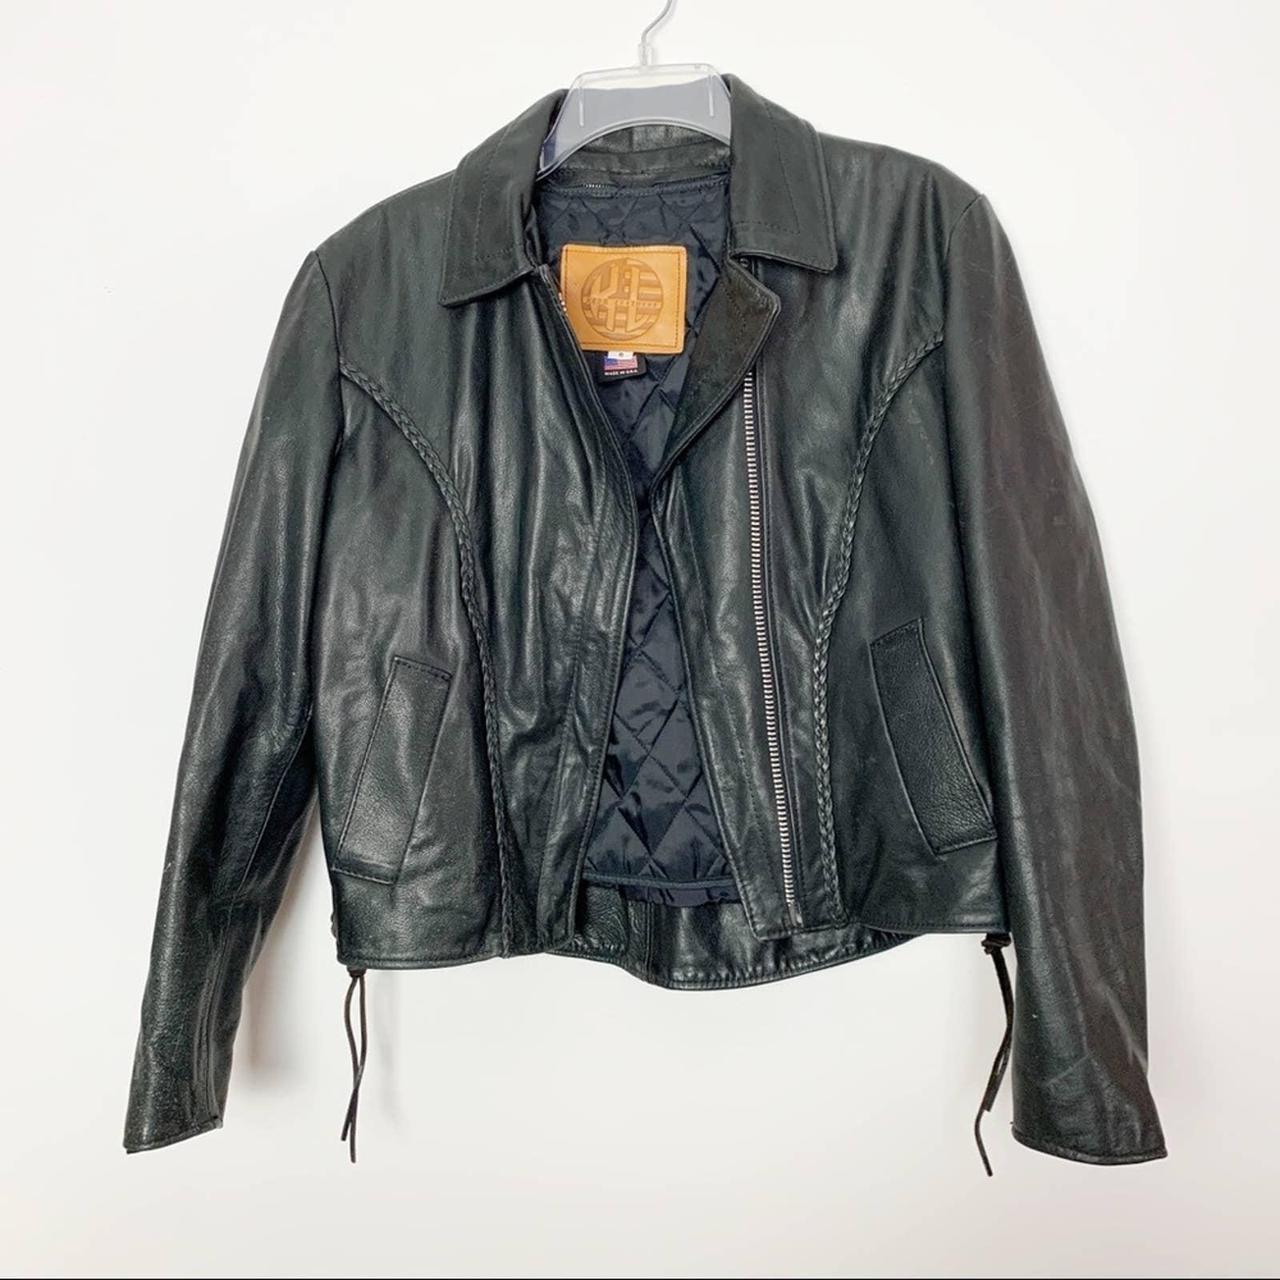 Kerr Leathers Black Leather Jacket Coat Size 8 Moto... - Depop